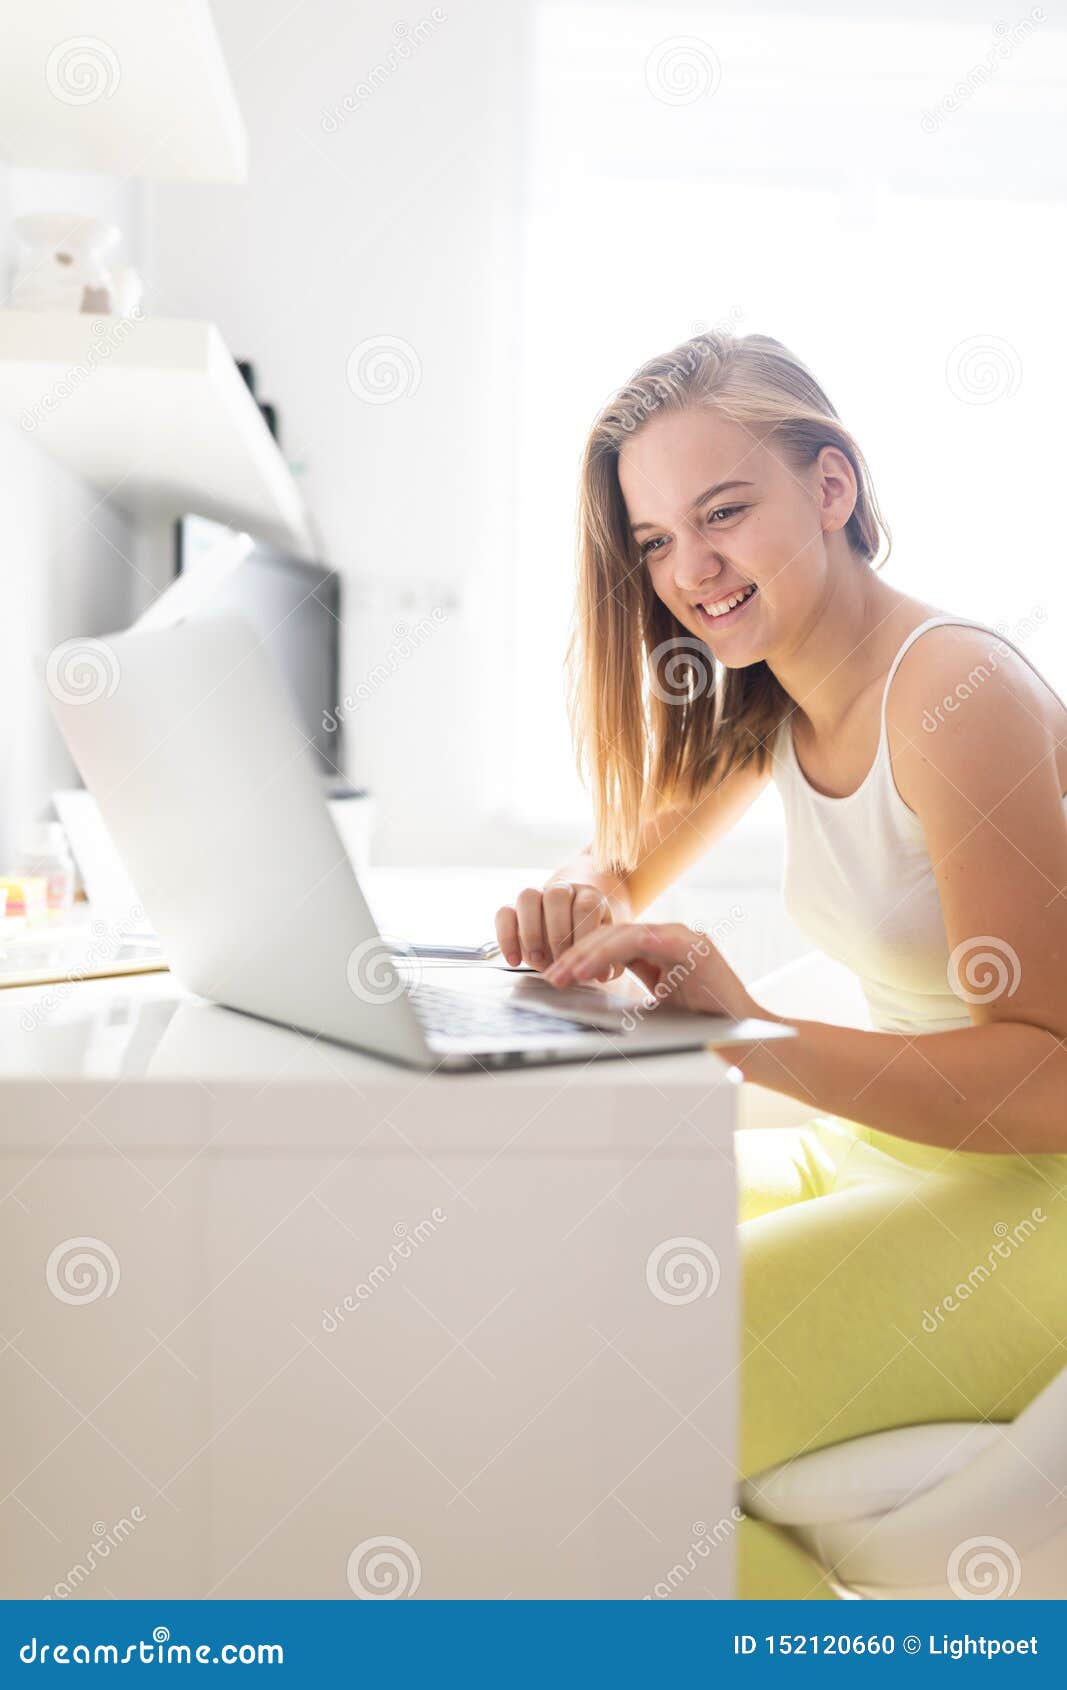 teenage girl studing for school, doing homework